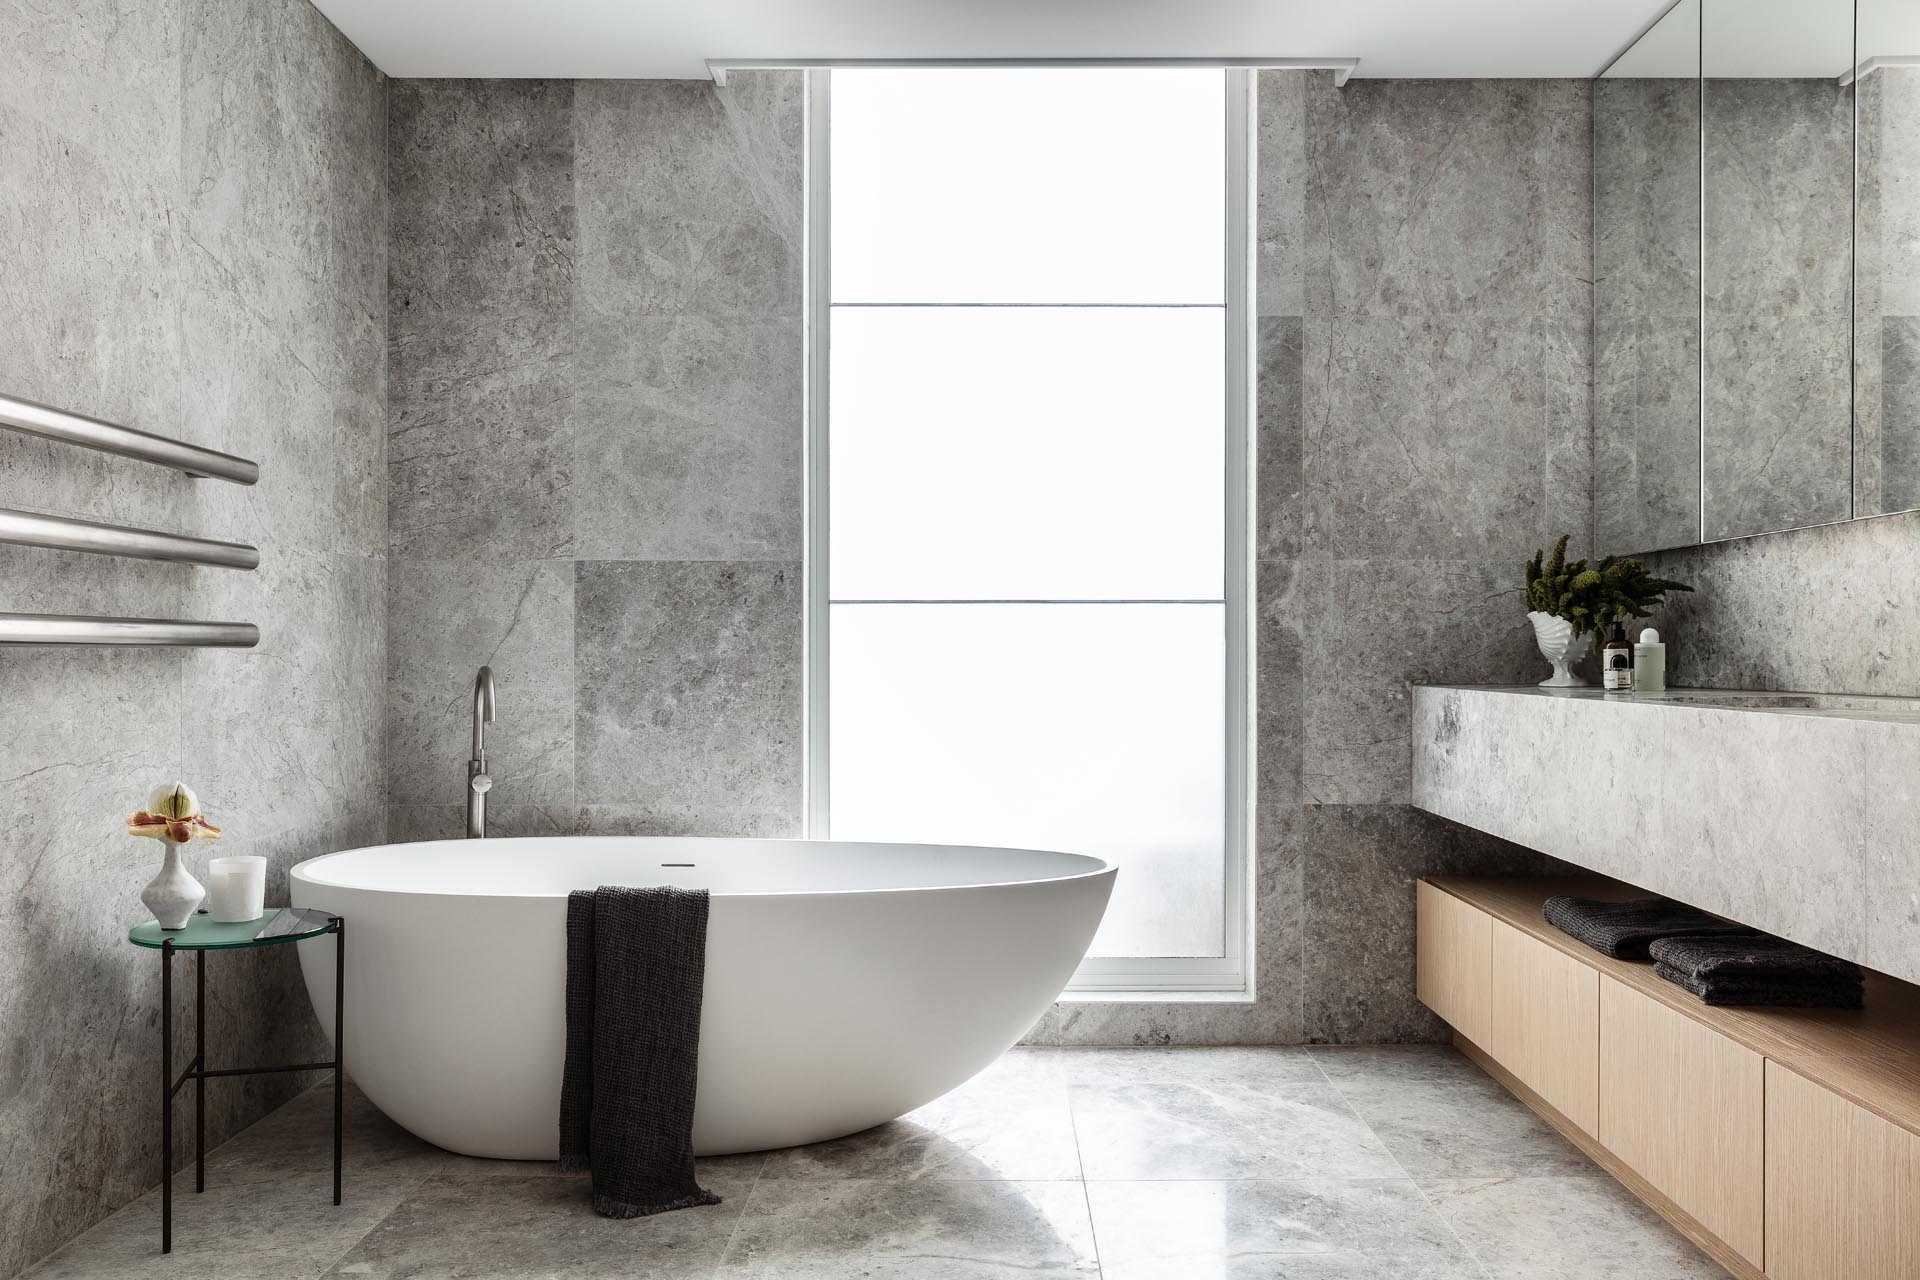 В этой современной главной ванной комнате натуральный камень с серой отделкой покрывает стены и пол, а также туалетный столик. Матовое окно от пола до потолка пропускает свет, но при этом сохраняет уединение.